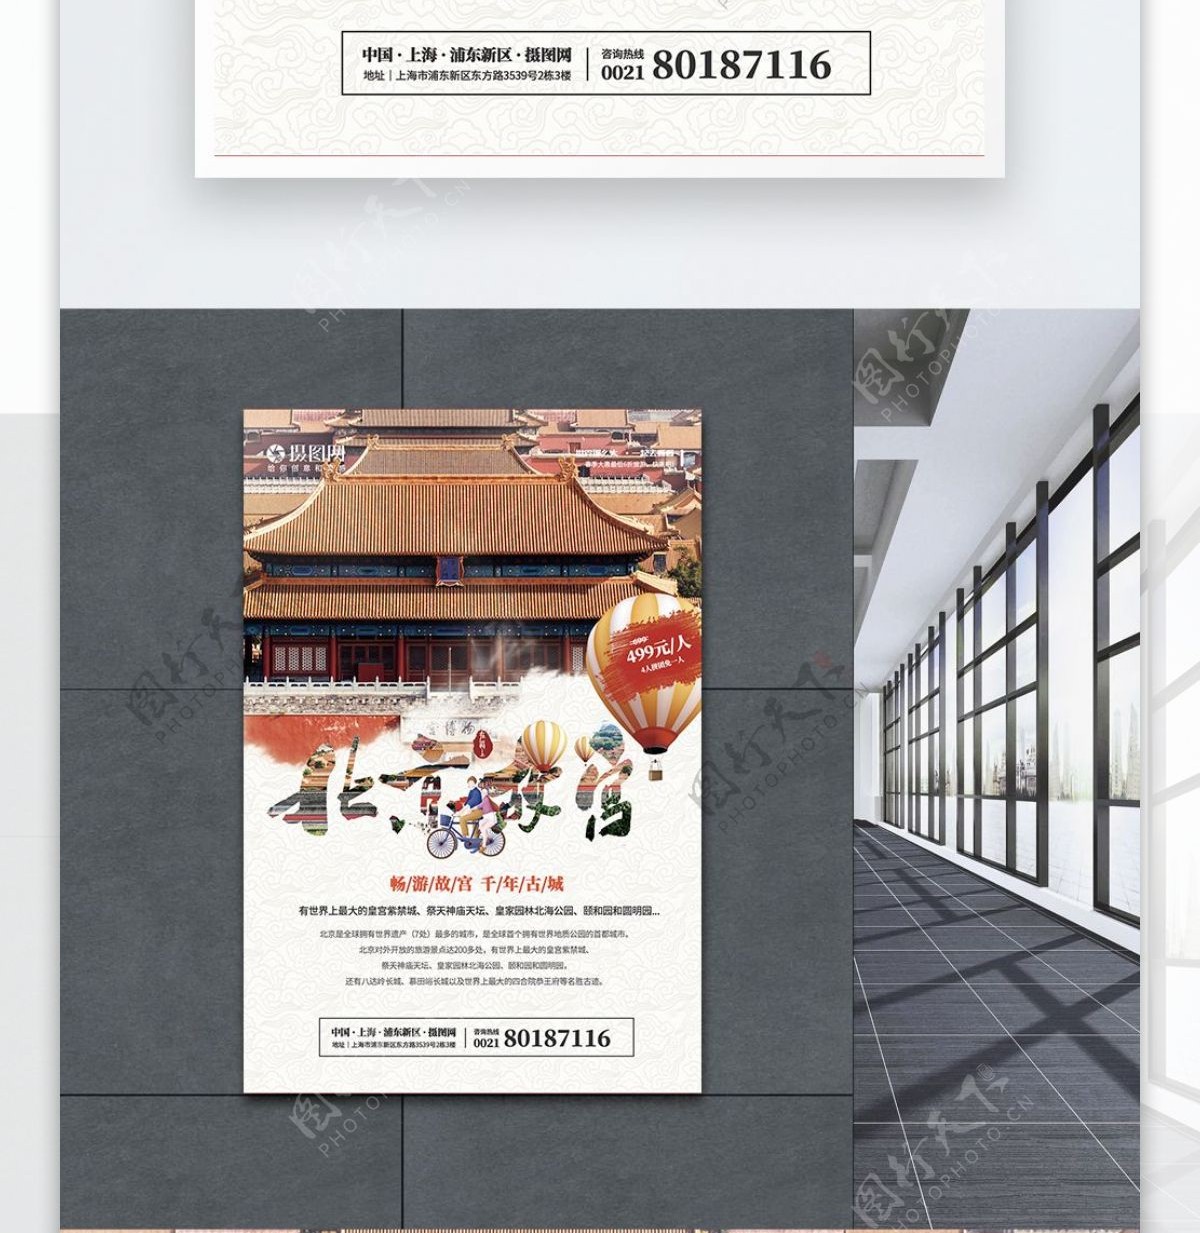 旅游系列北京故宫海报